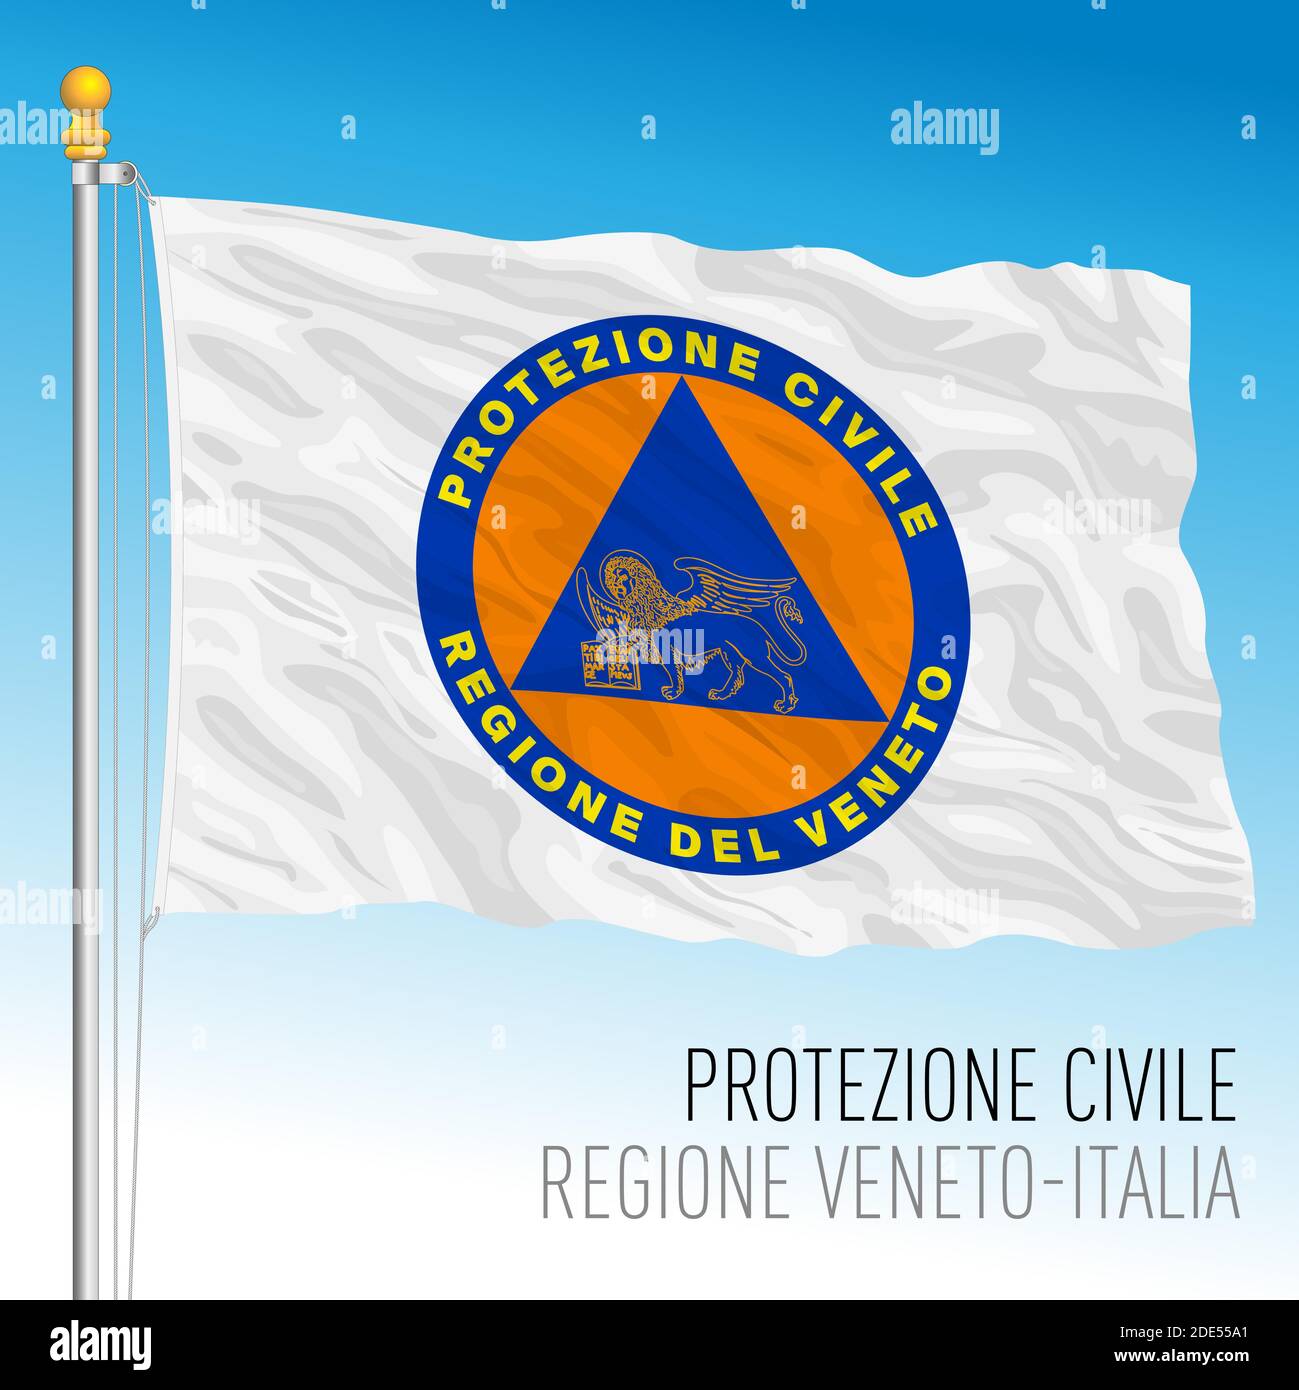 Zivilschutzflagge von Venetien, Hilfsorganisation, Region Venetien, Italien, Vektorgrafik Stock Vektor